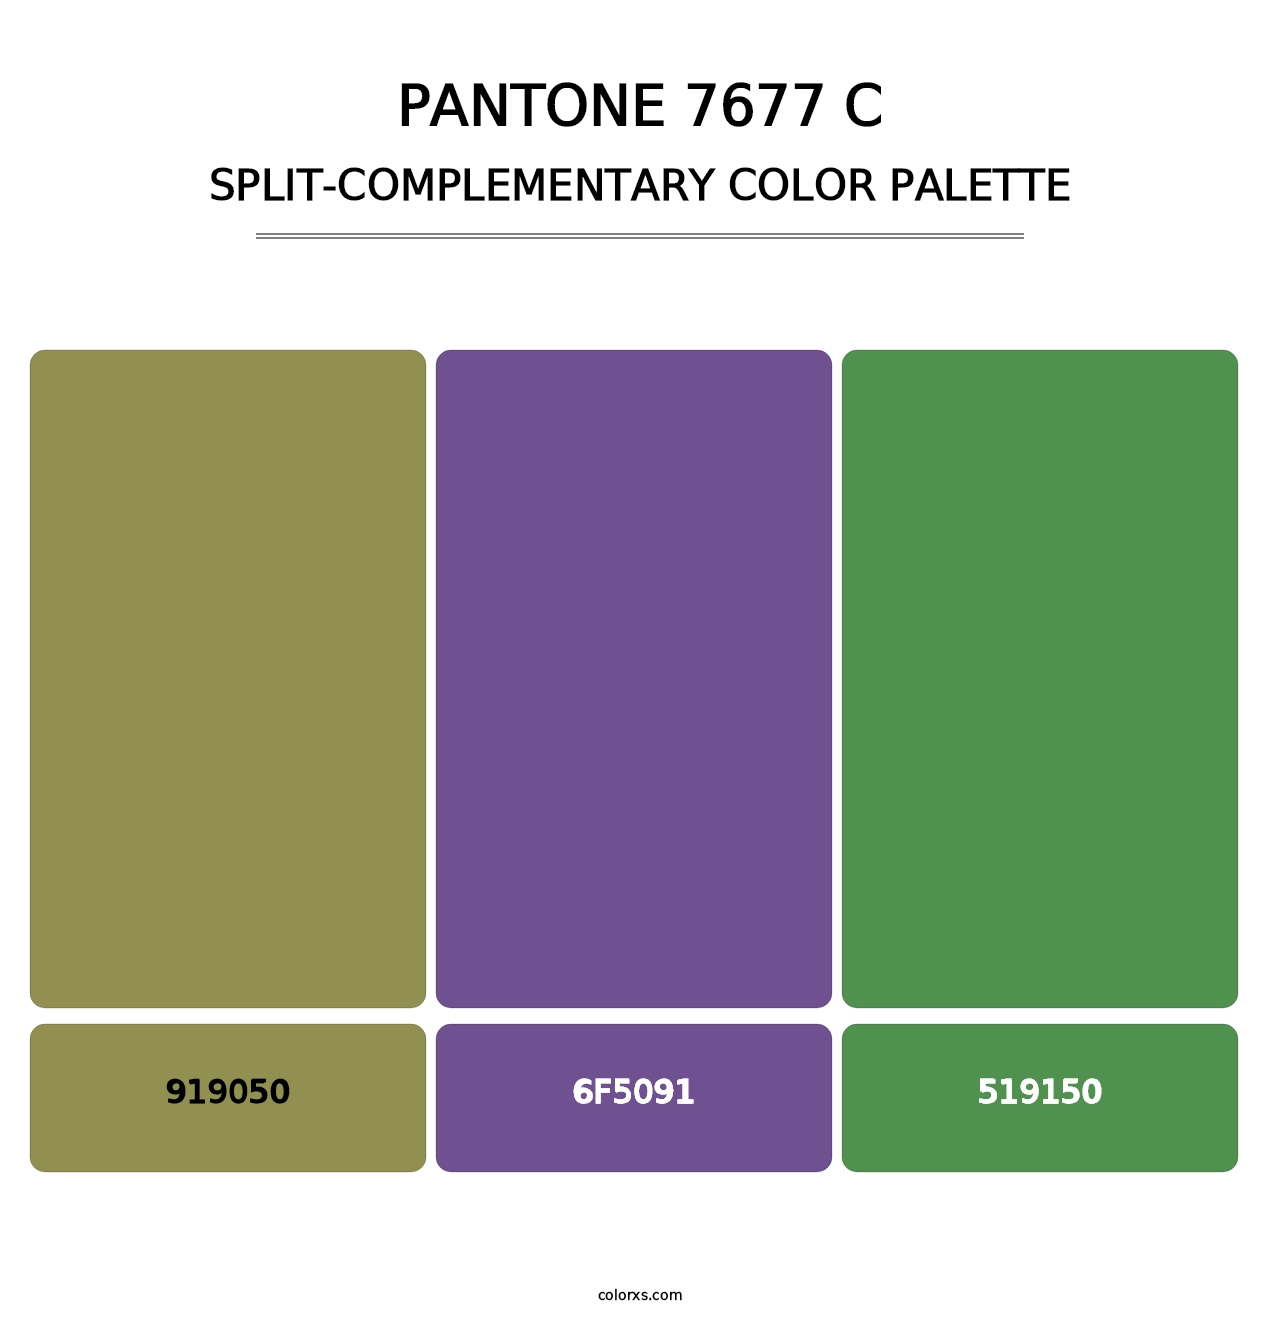 PANTONE 7677 C - Split-Complementary Color Palette